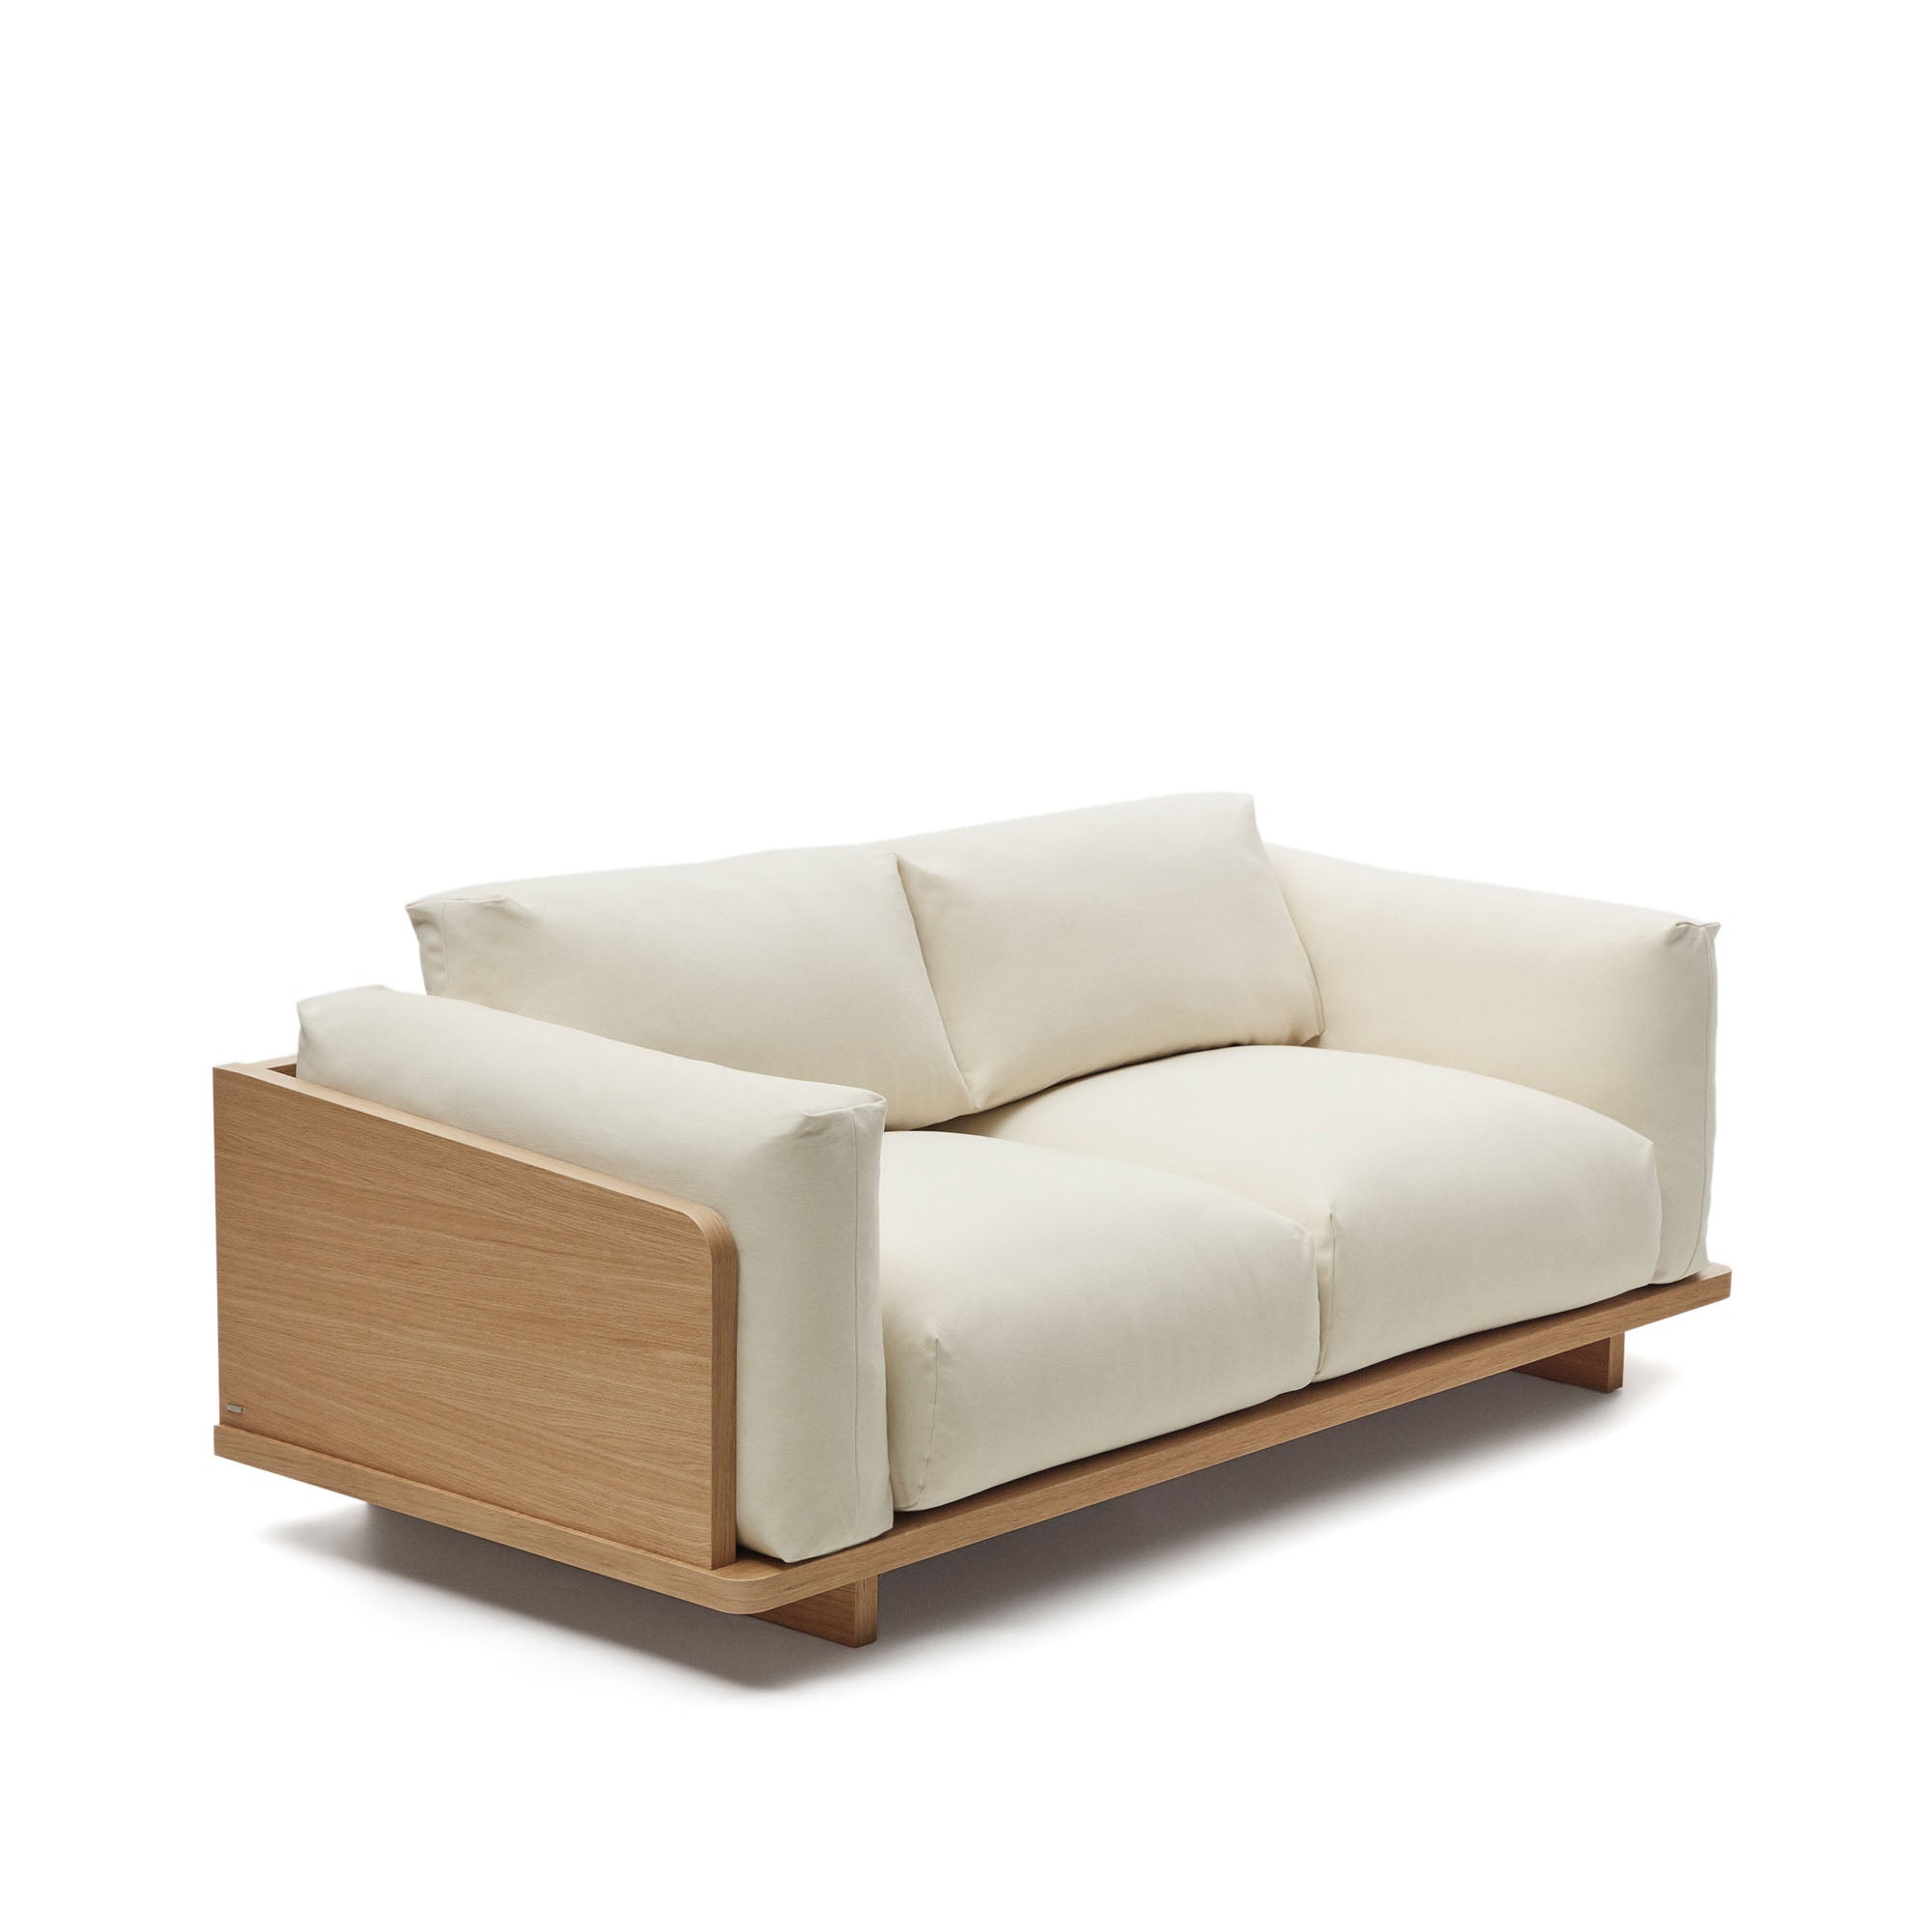 Oaq 3 seater sofa in beige, 225 cm